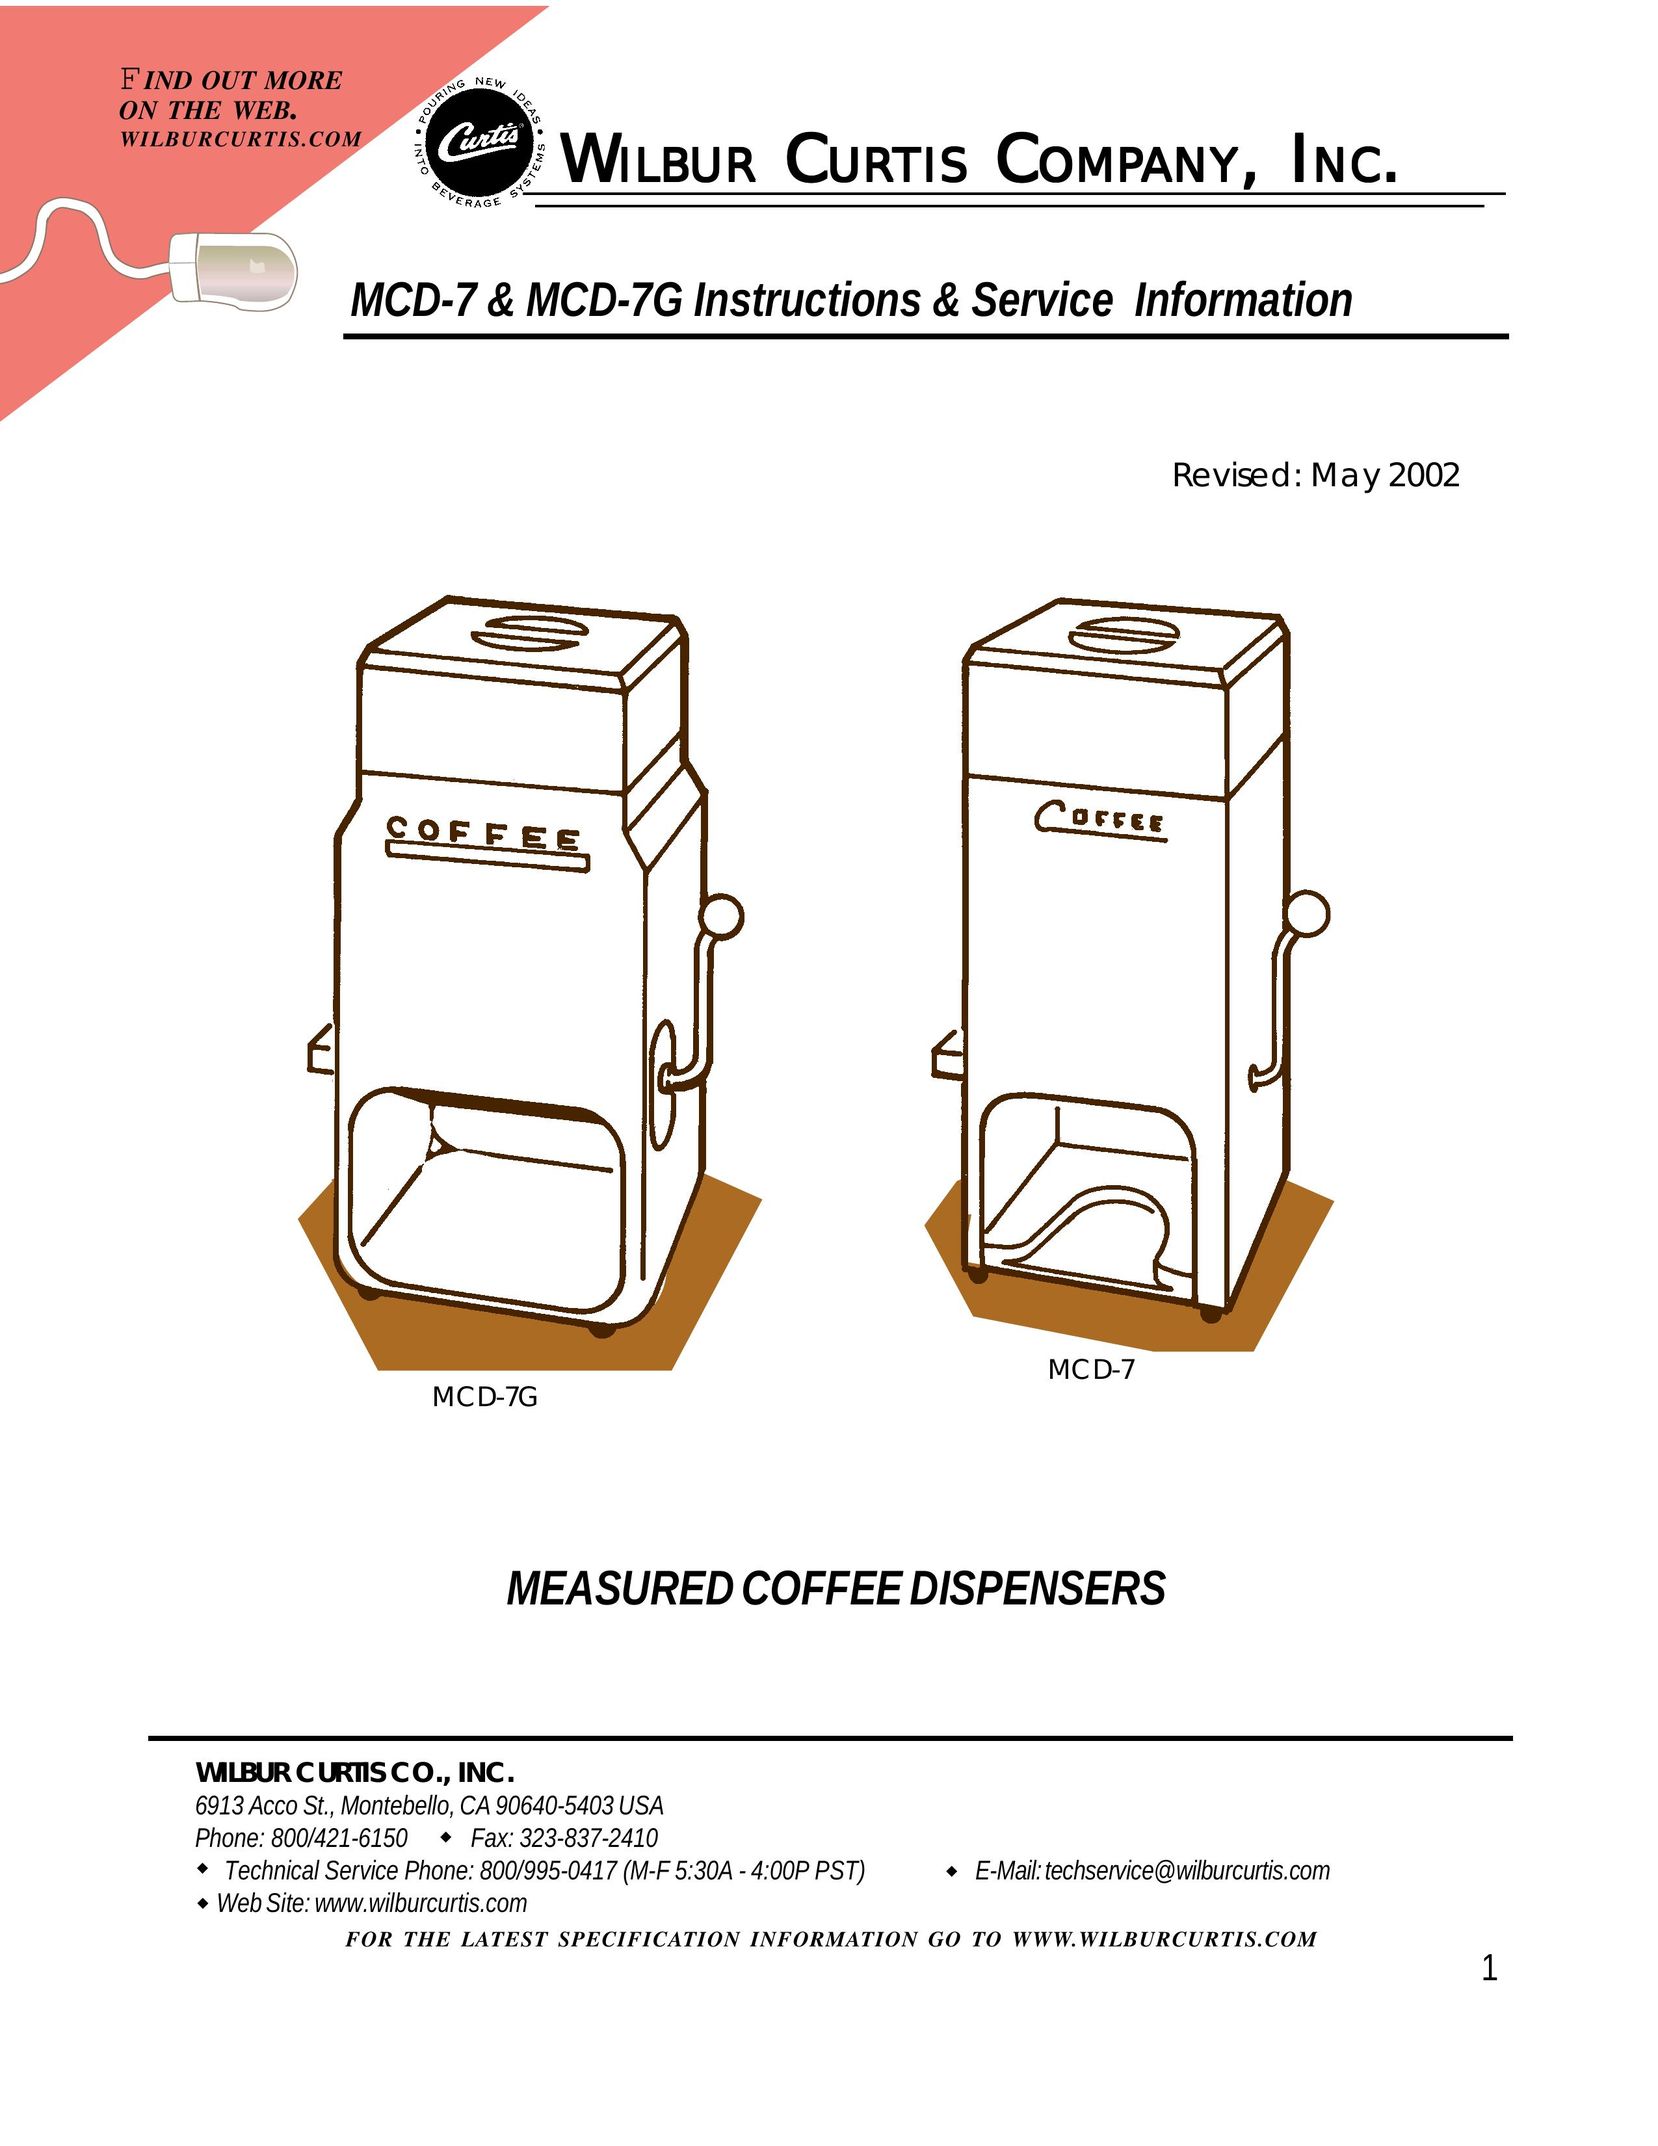 Wibur Curtis Company MCD-7G Beverage Dispenser User Manual